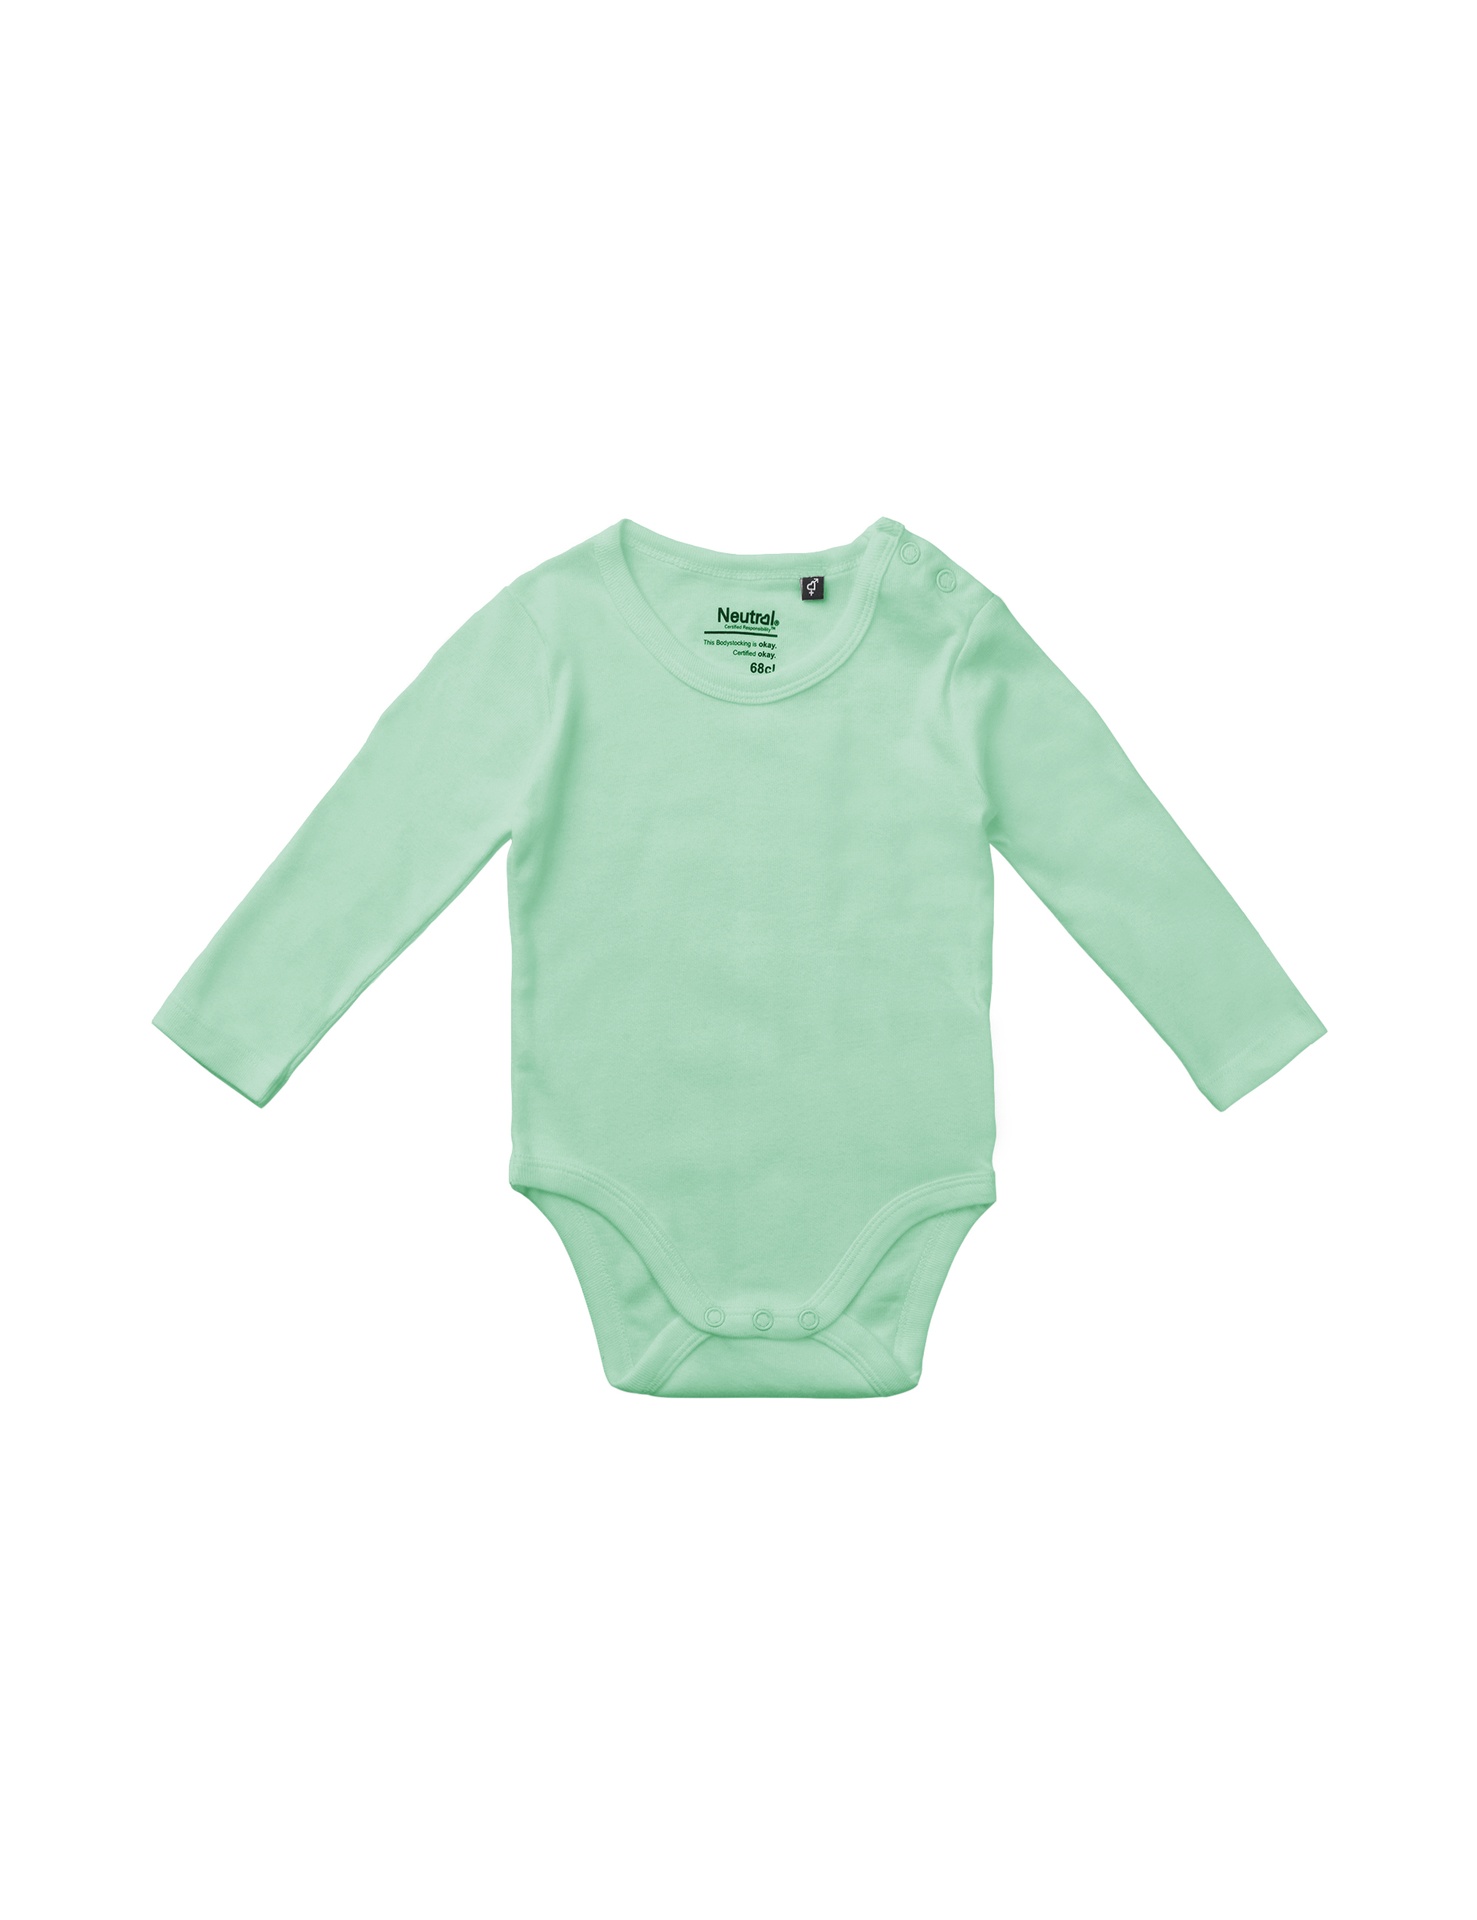 [PR/05738] Babies Long Sleeve Bodystocking (Dusty Mint 40, 68 cm)